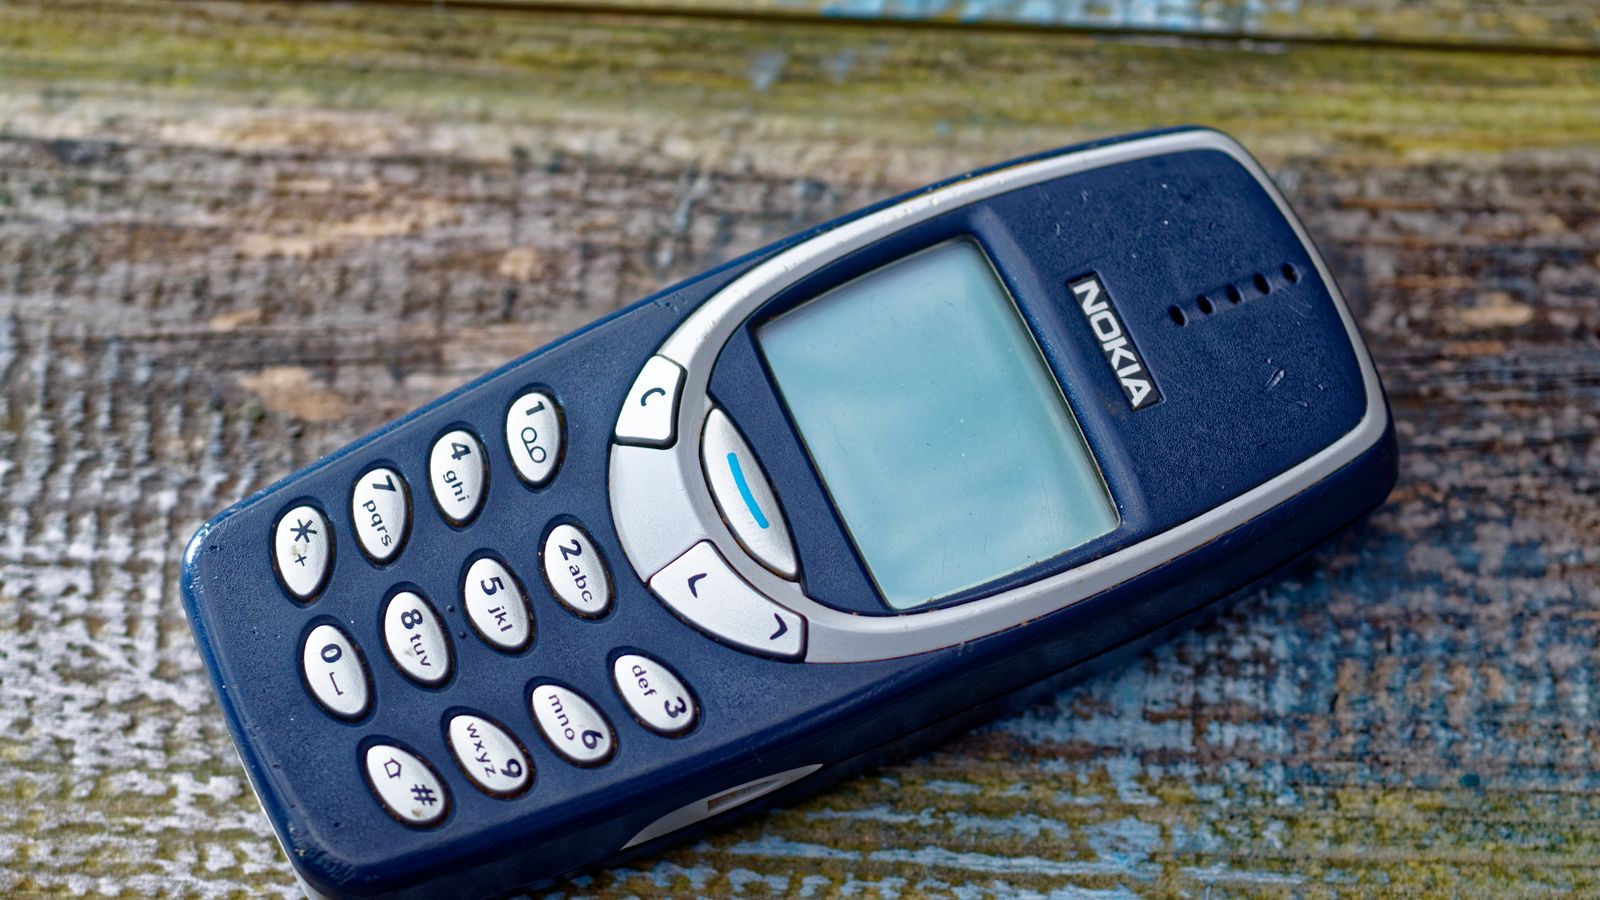 Scopri quanto vale oggi un Nokia 3310: un tesoro per i collezionisti e un pezzo di storia mobile.